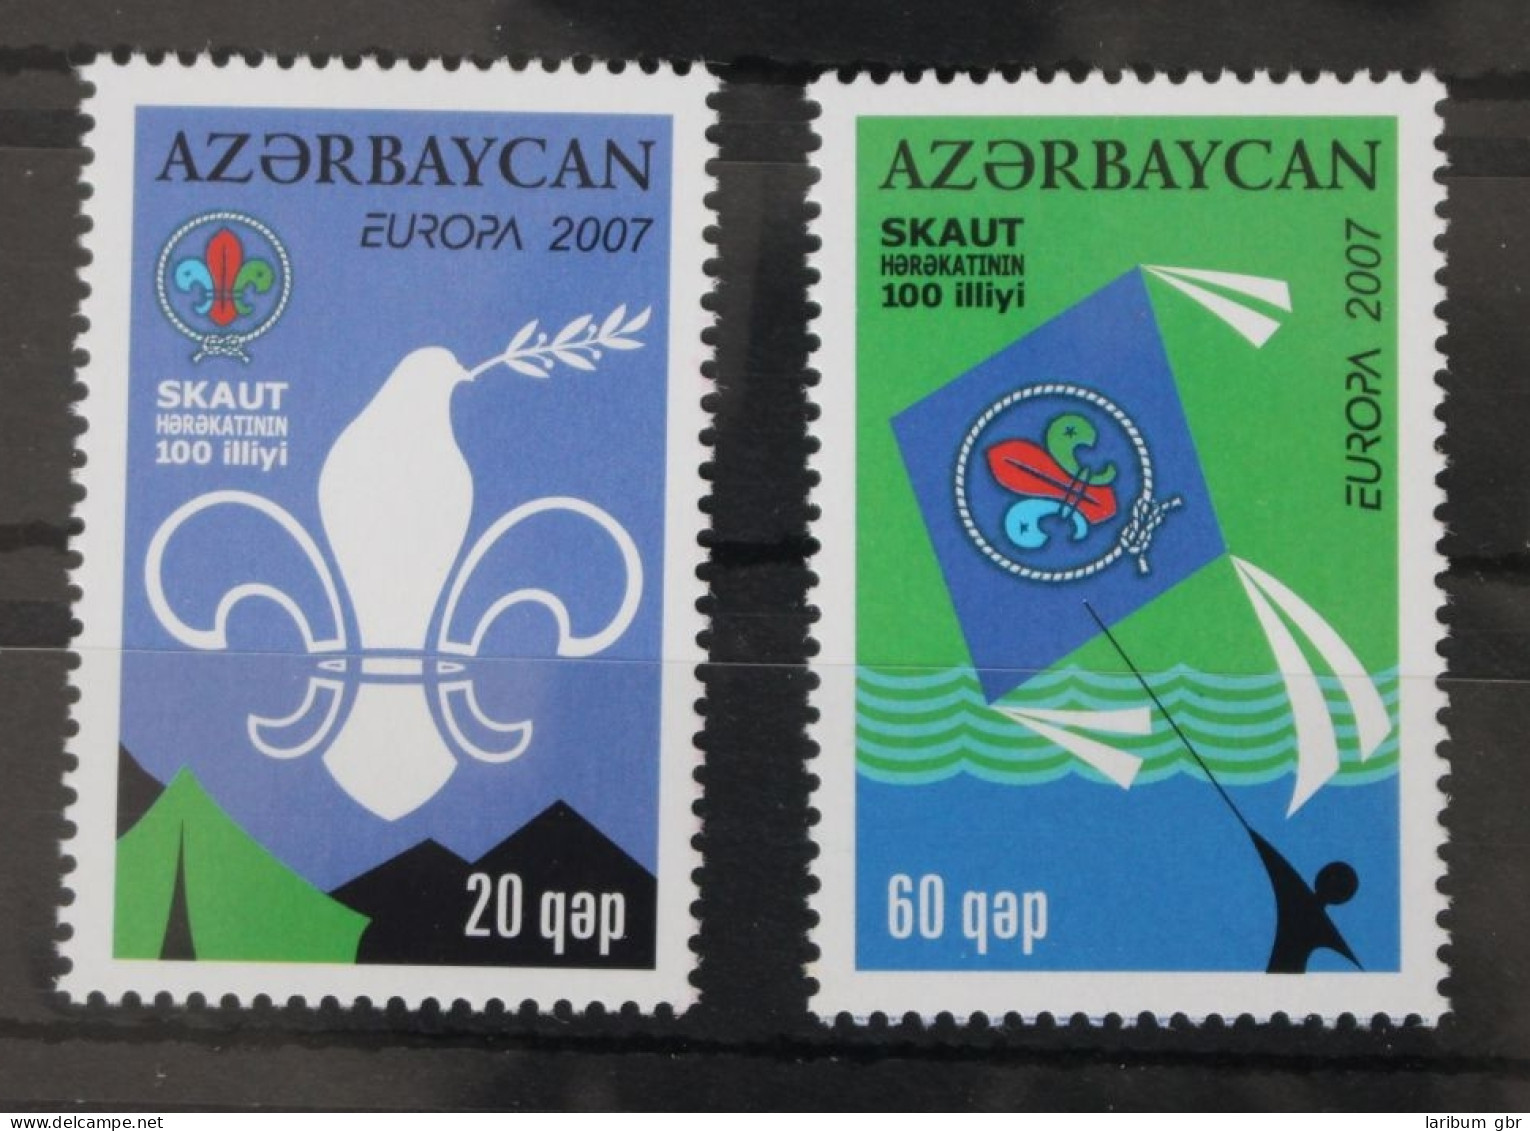 Aserbaidschan 679-680 Postfrisch Europa Pfadfinder #WK978 - Azerbaijan